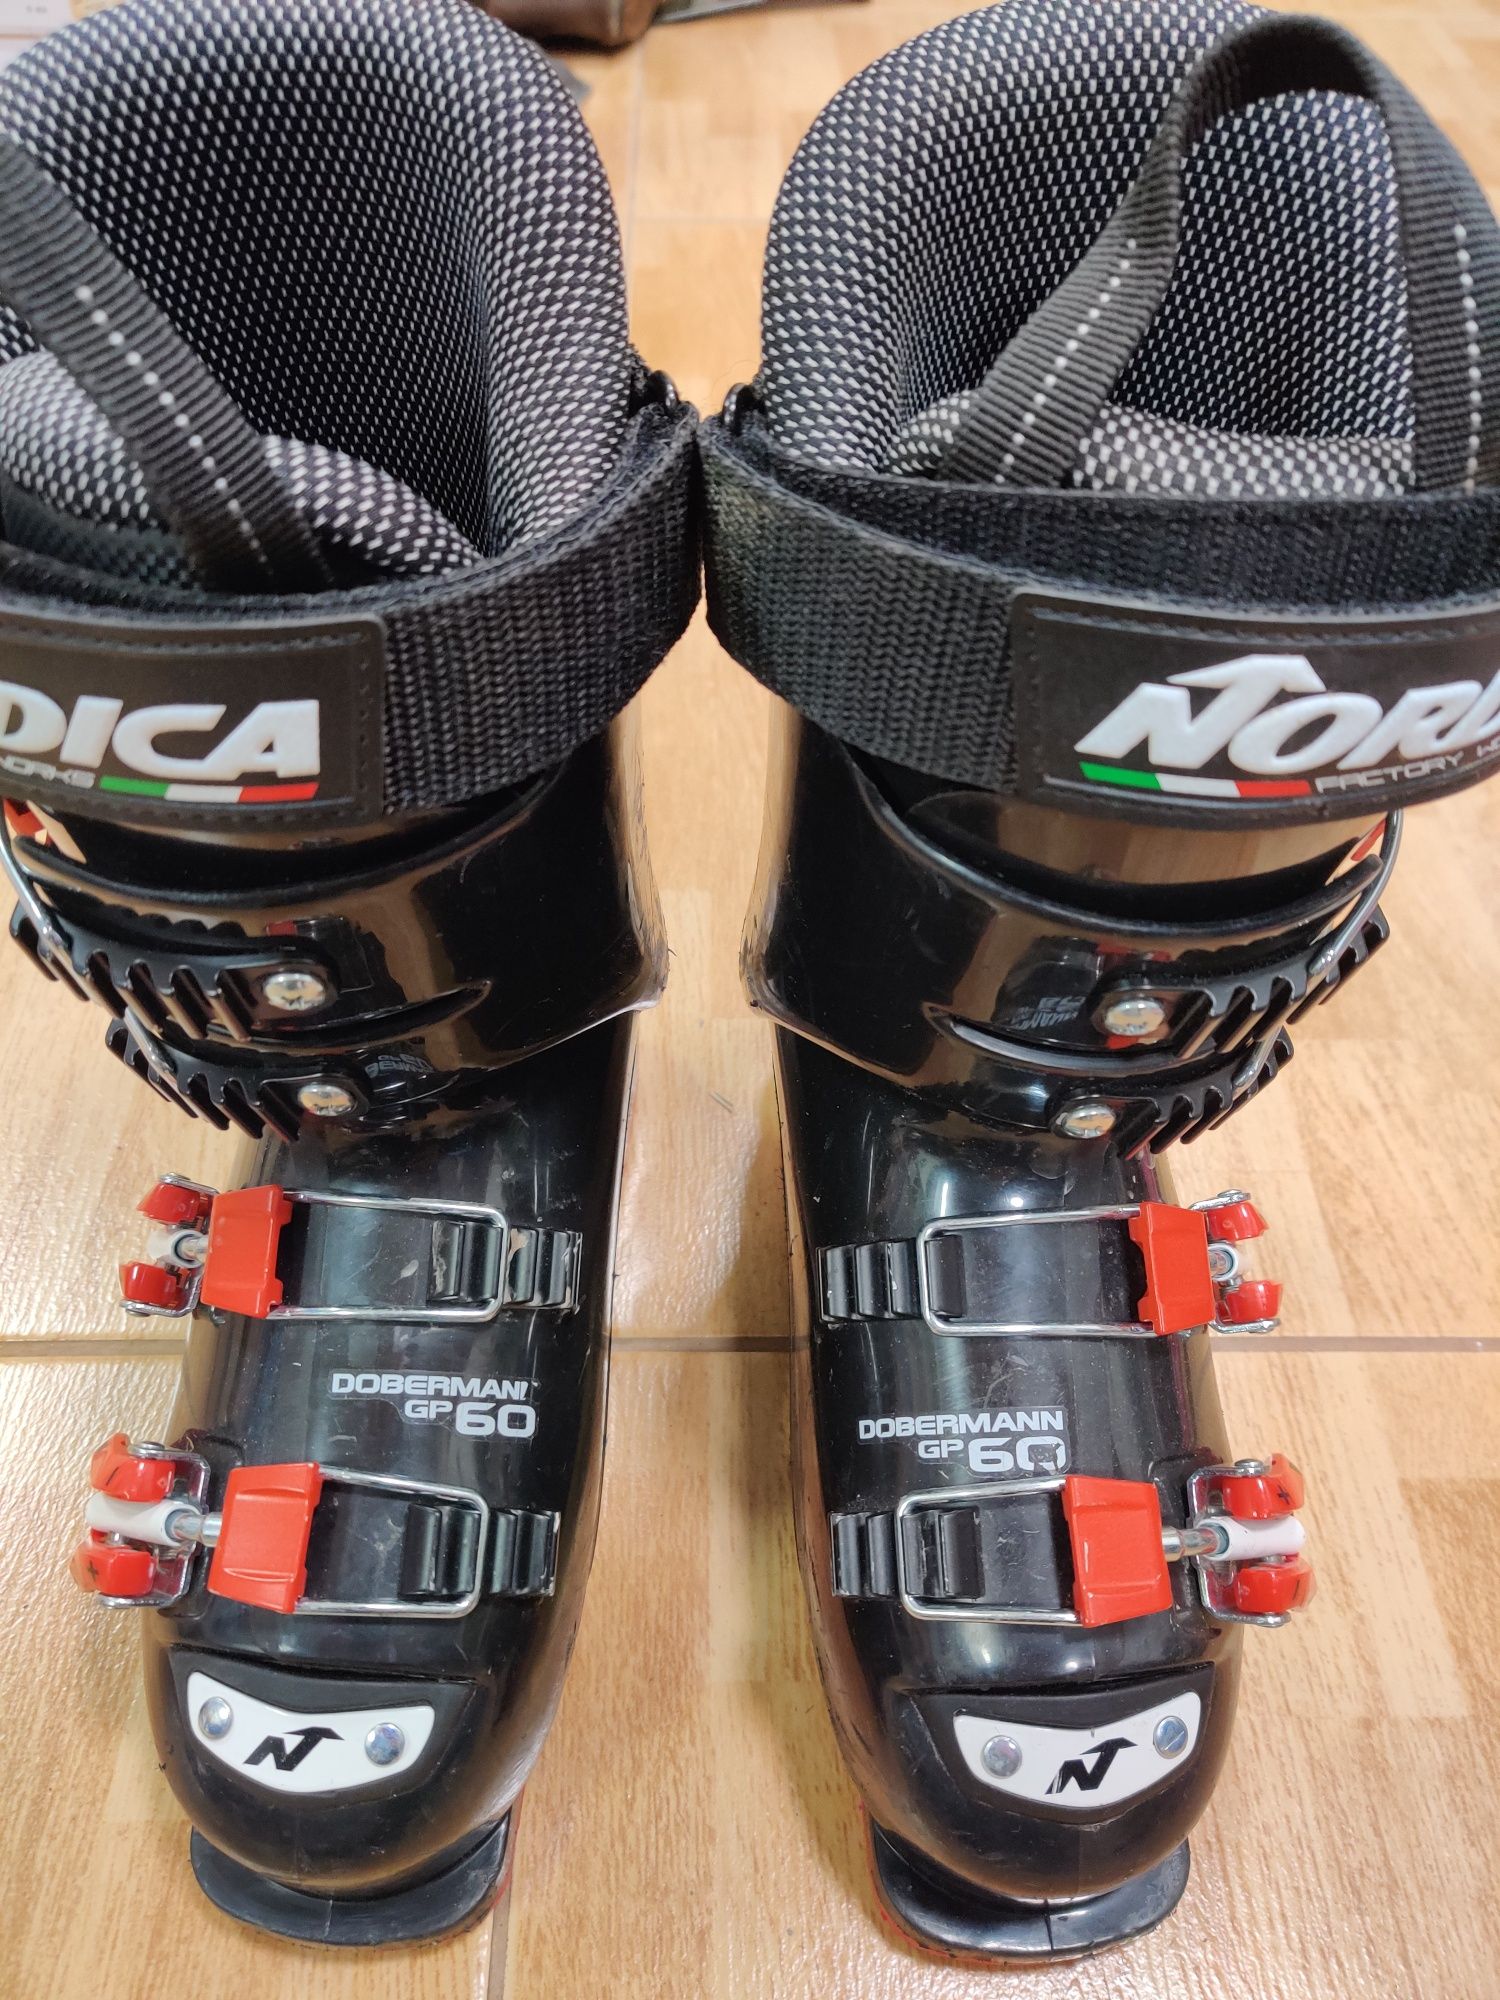 Buty narciarskie dziecięce juniorskie Nordica Dobermann, 20 - 20,5 cm